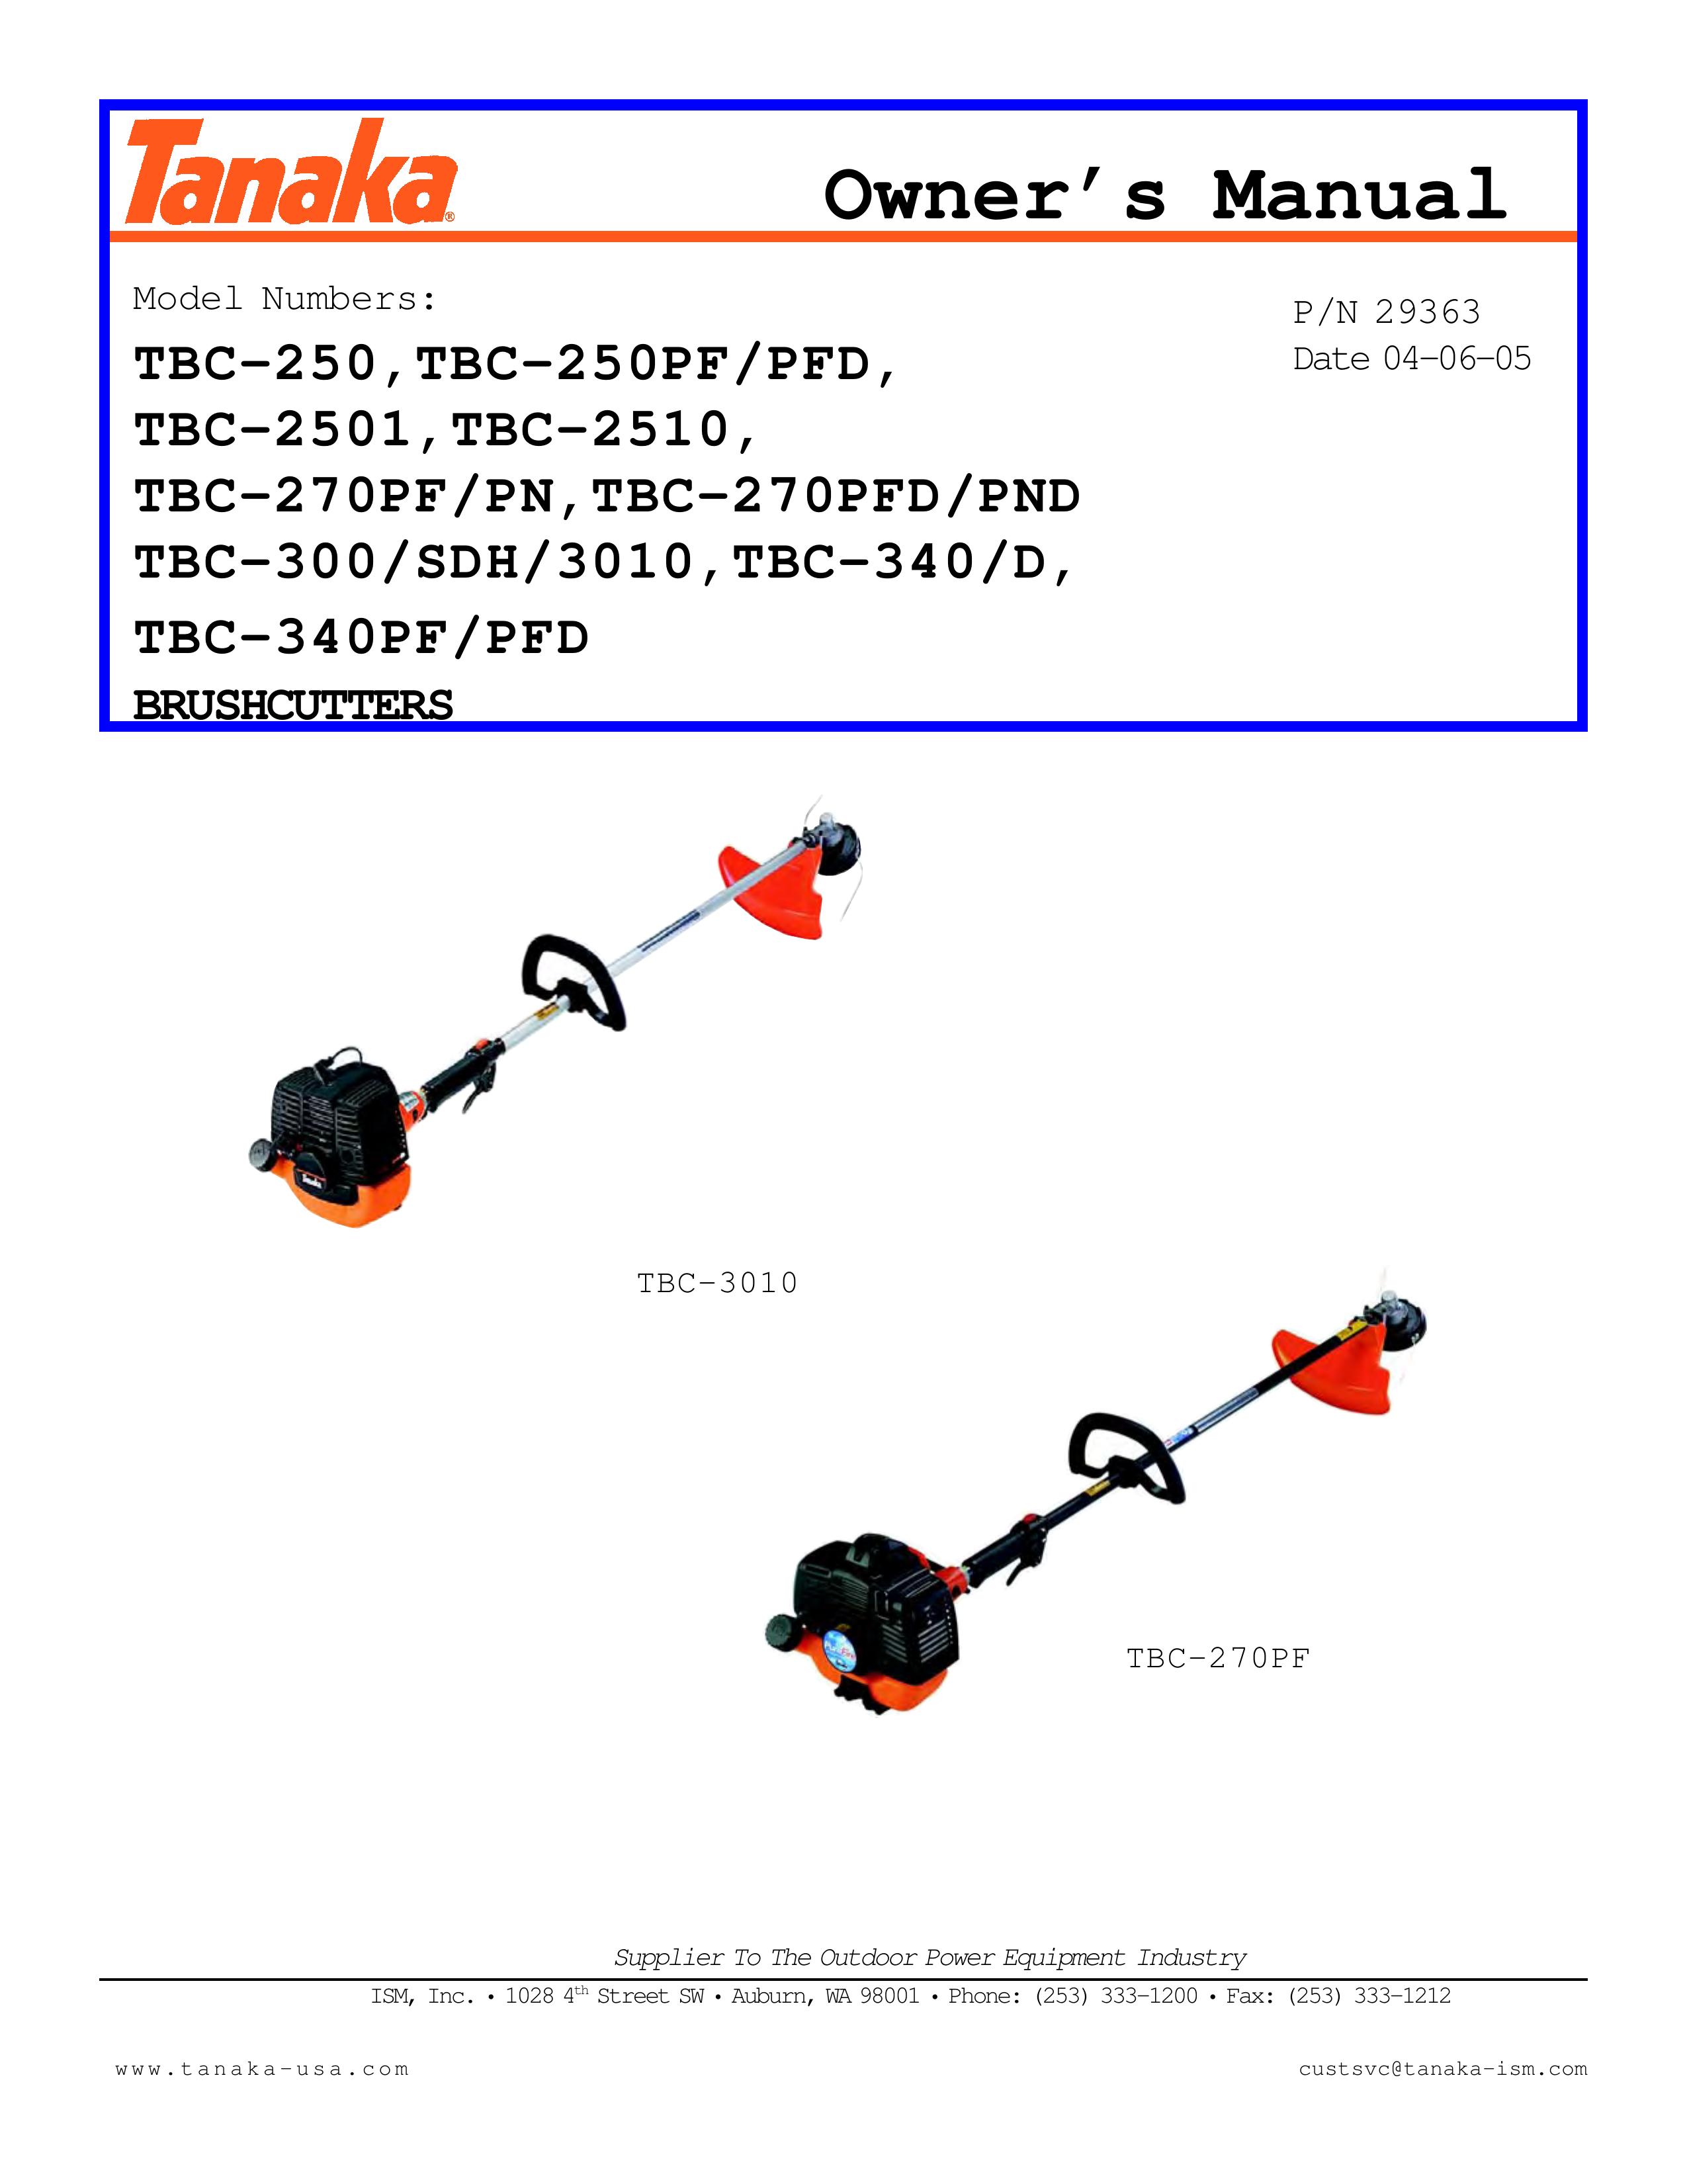 Tanaka TBC-270PF/PN Edger User Manual